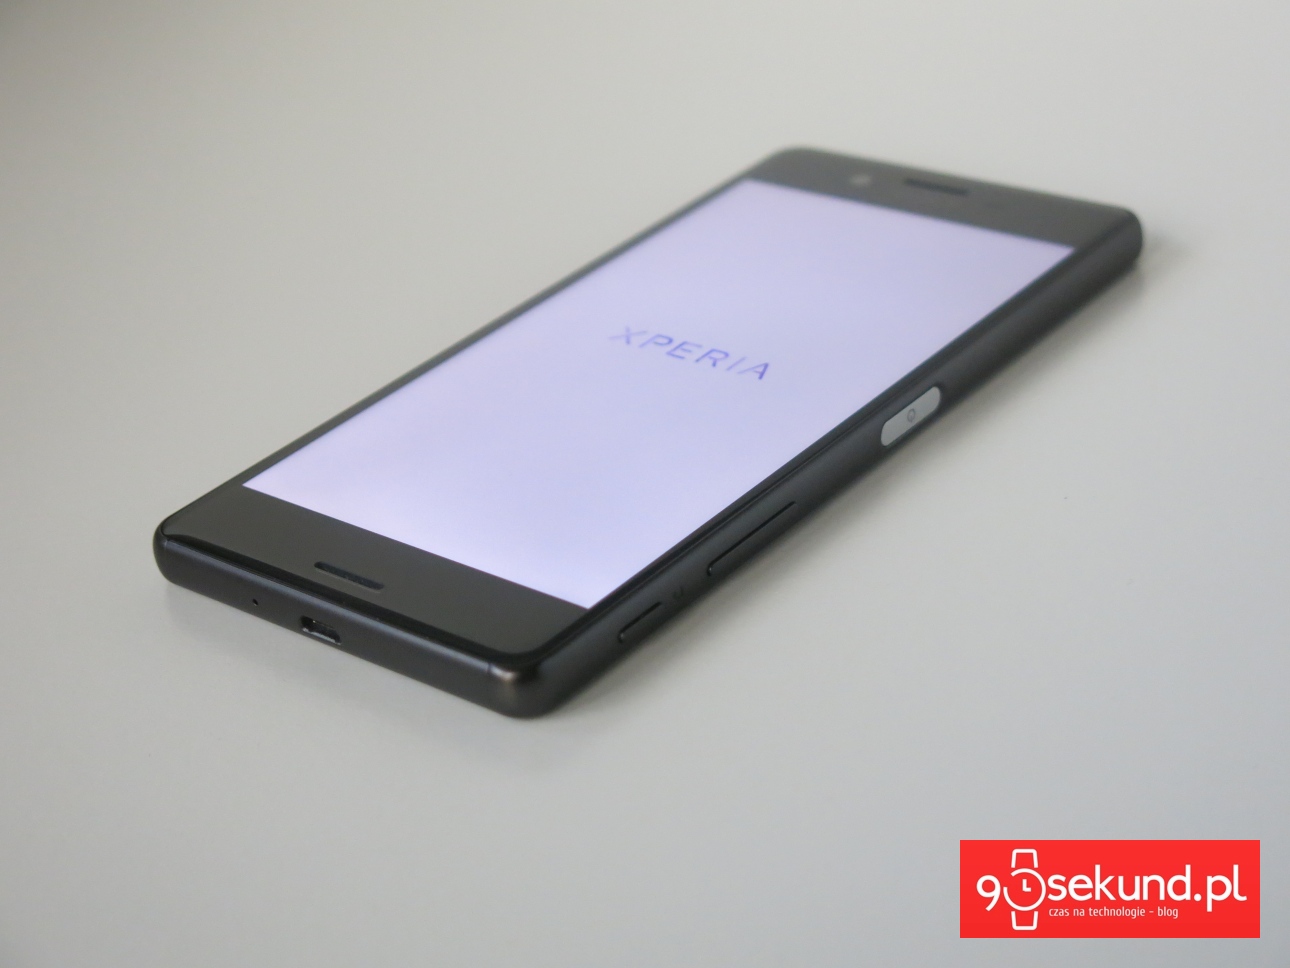 Recenzja Sony Xperia X 2016 (F5121) - 90sekund.pl